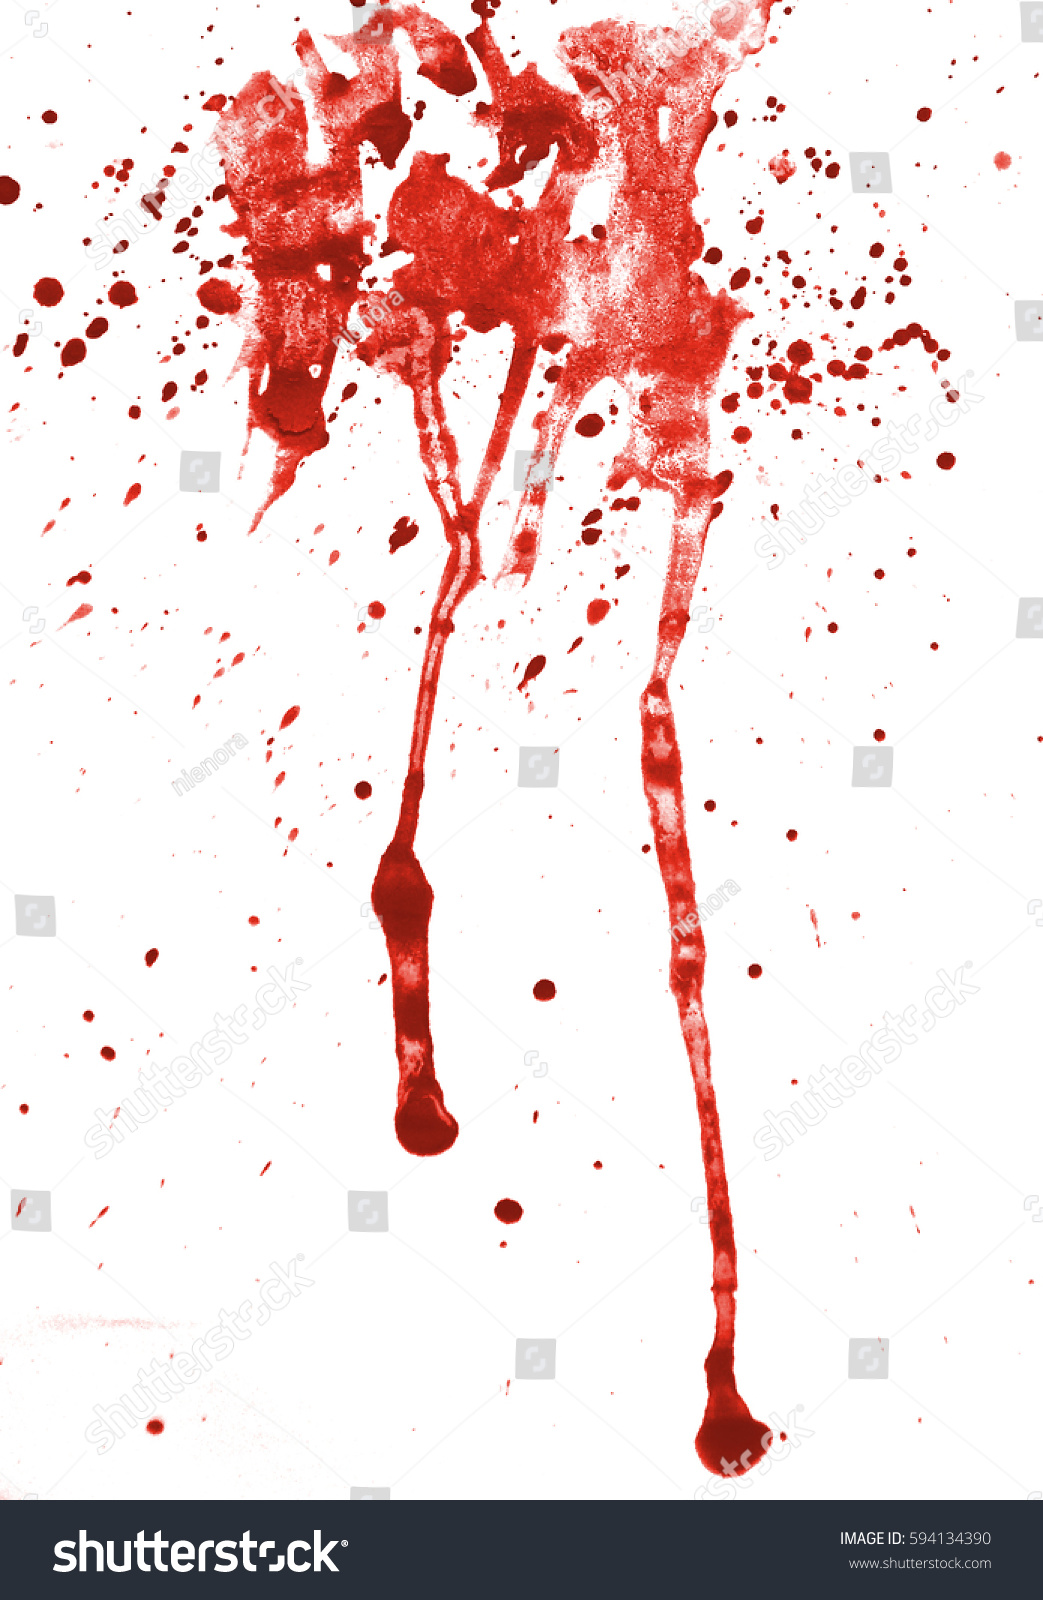 血 しぶき イラスト 痛い ケド映える 血 イラストの簡単な描き方